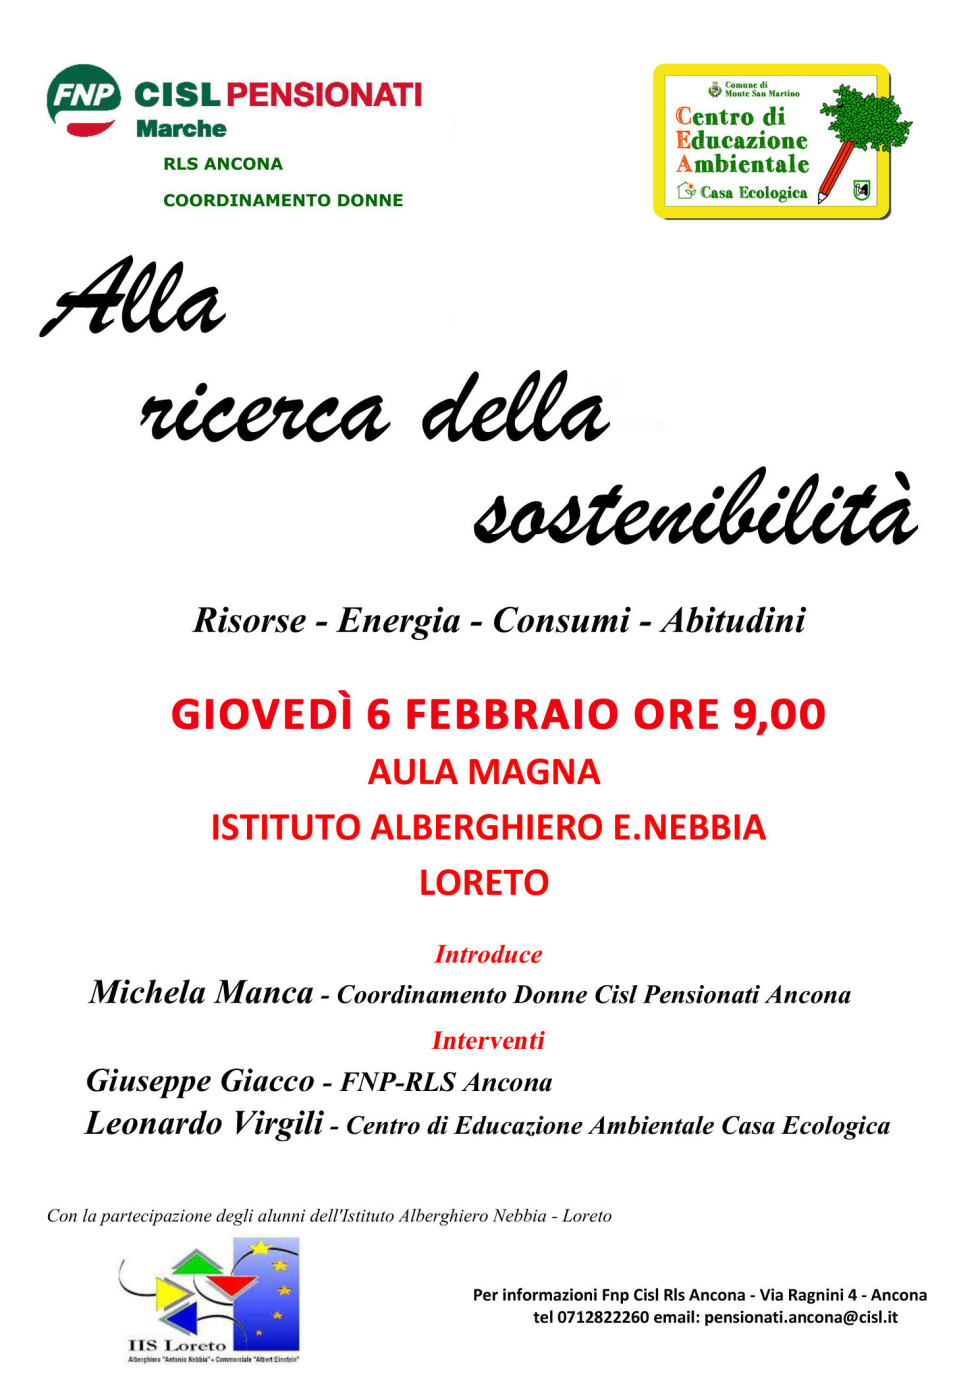 Alla ricerca della sostenibilità: incontro sull'ambiente il 6 febbraio a Loreto